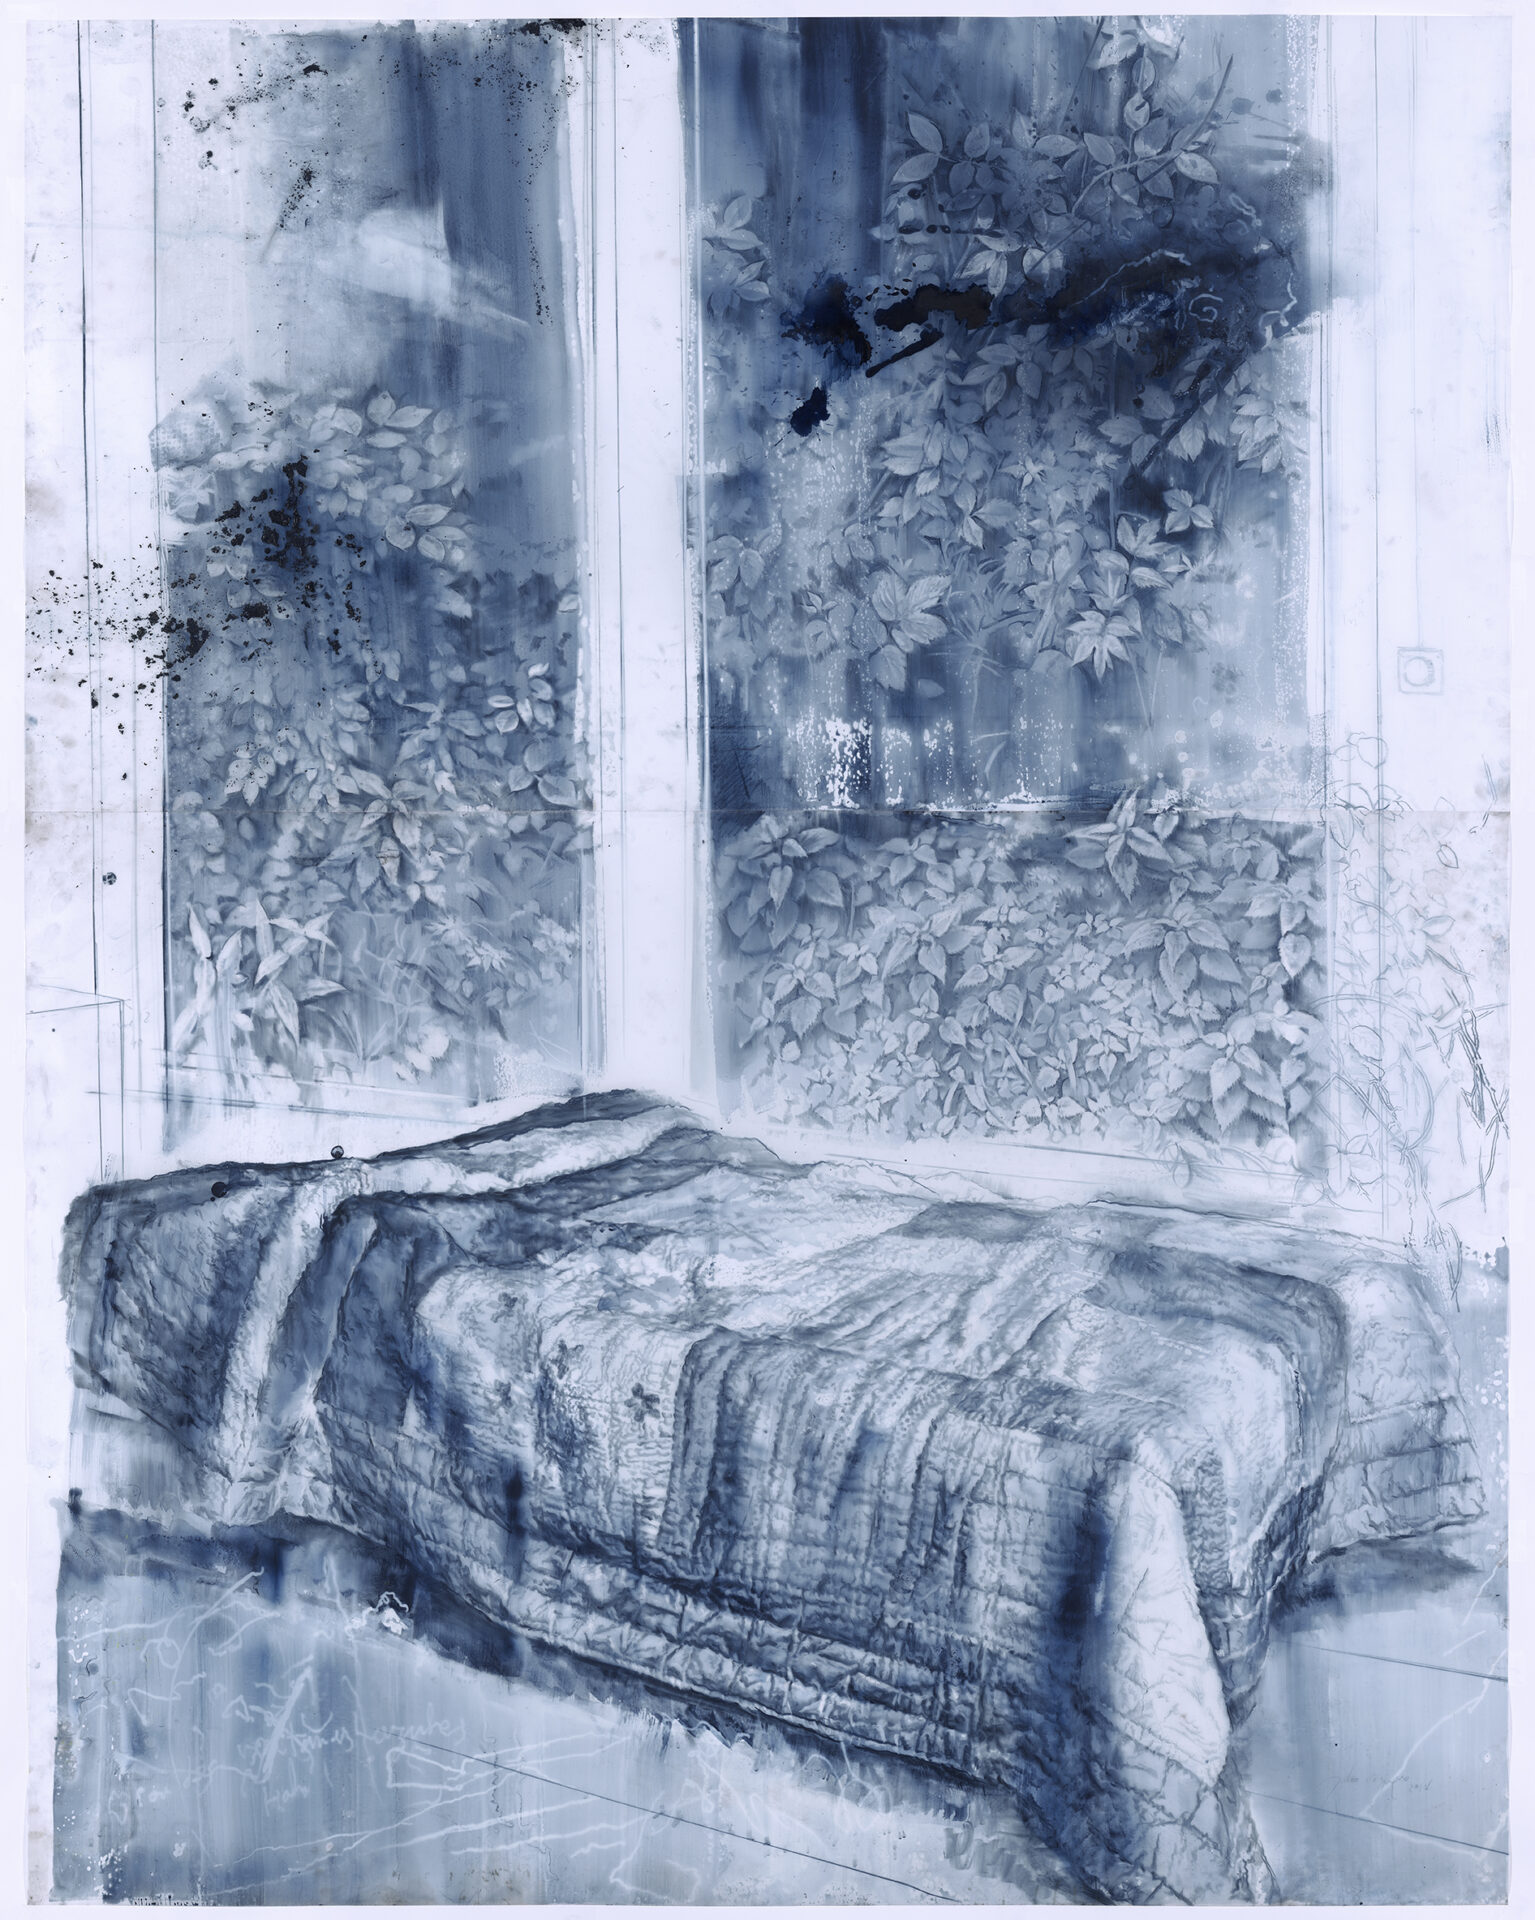 JVQ Dibujo de dos ventanas azules 2018 195x160 cm Crete and wash on greaseproof paper Pigment Gallery Galería de Arte en Barcelona Buy works